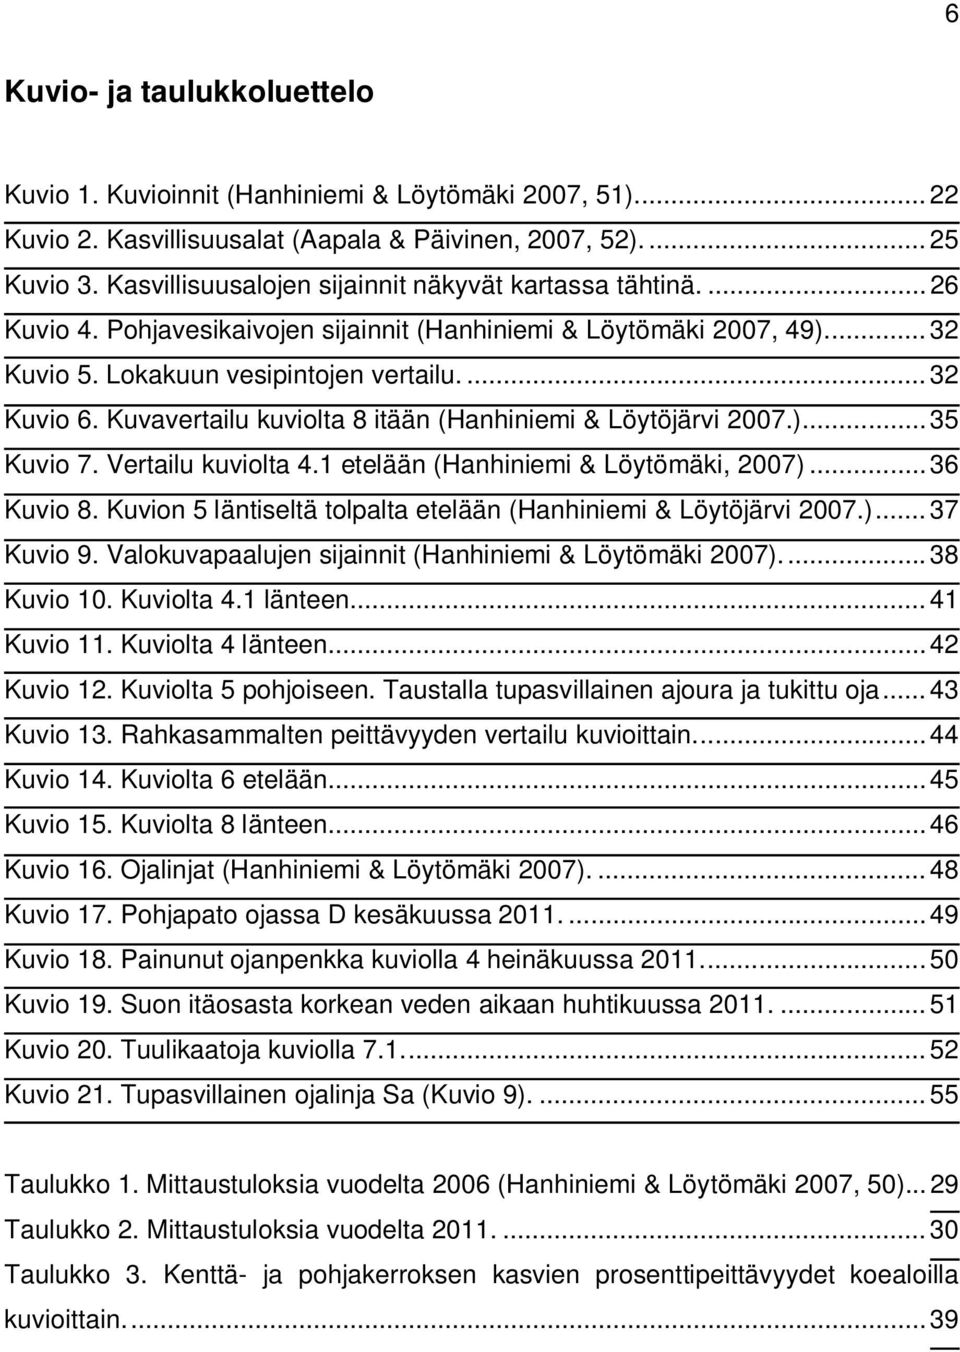 Kuvavertailu kuviolta 8 itään (Hanhiniemi & Löytöjärvi 2007.)... 35 Kuvio 7. Vertailu kuviolta 4.1 etelään (Hanhiniemi & Löytömäki, 2007)... 36 Kuvio 8.